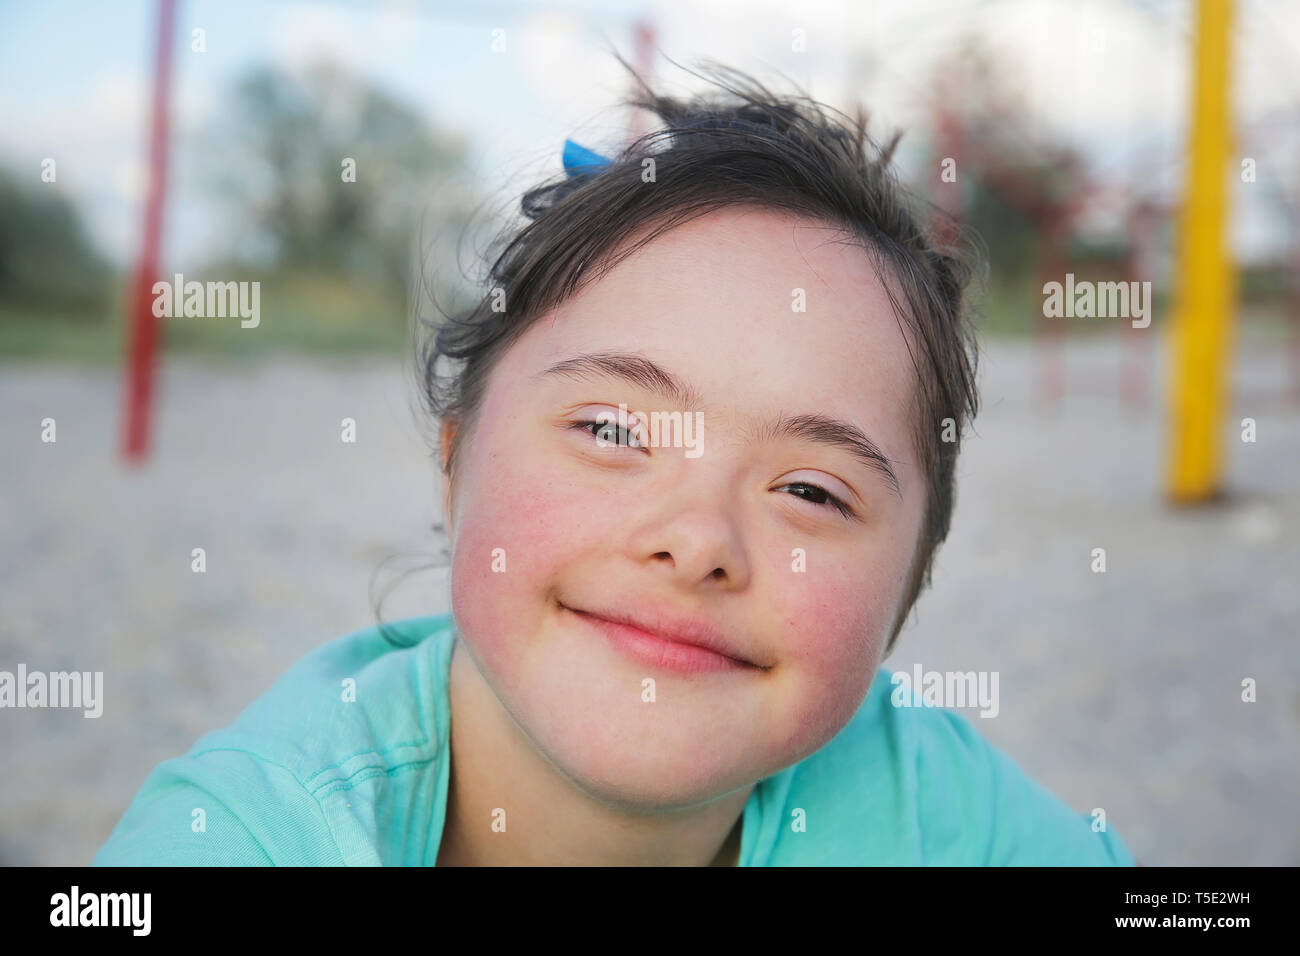 Portrait de syndrome de Down girl smiling Photo Stock - Alamy